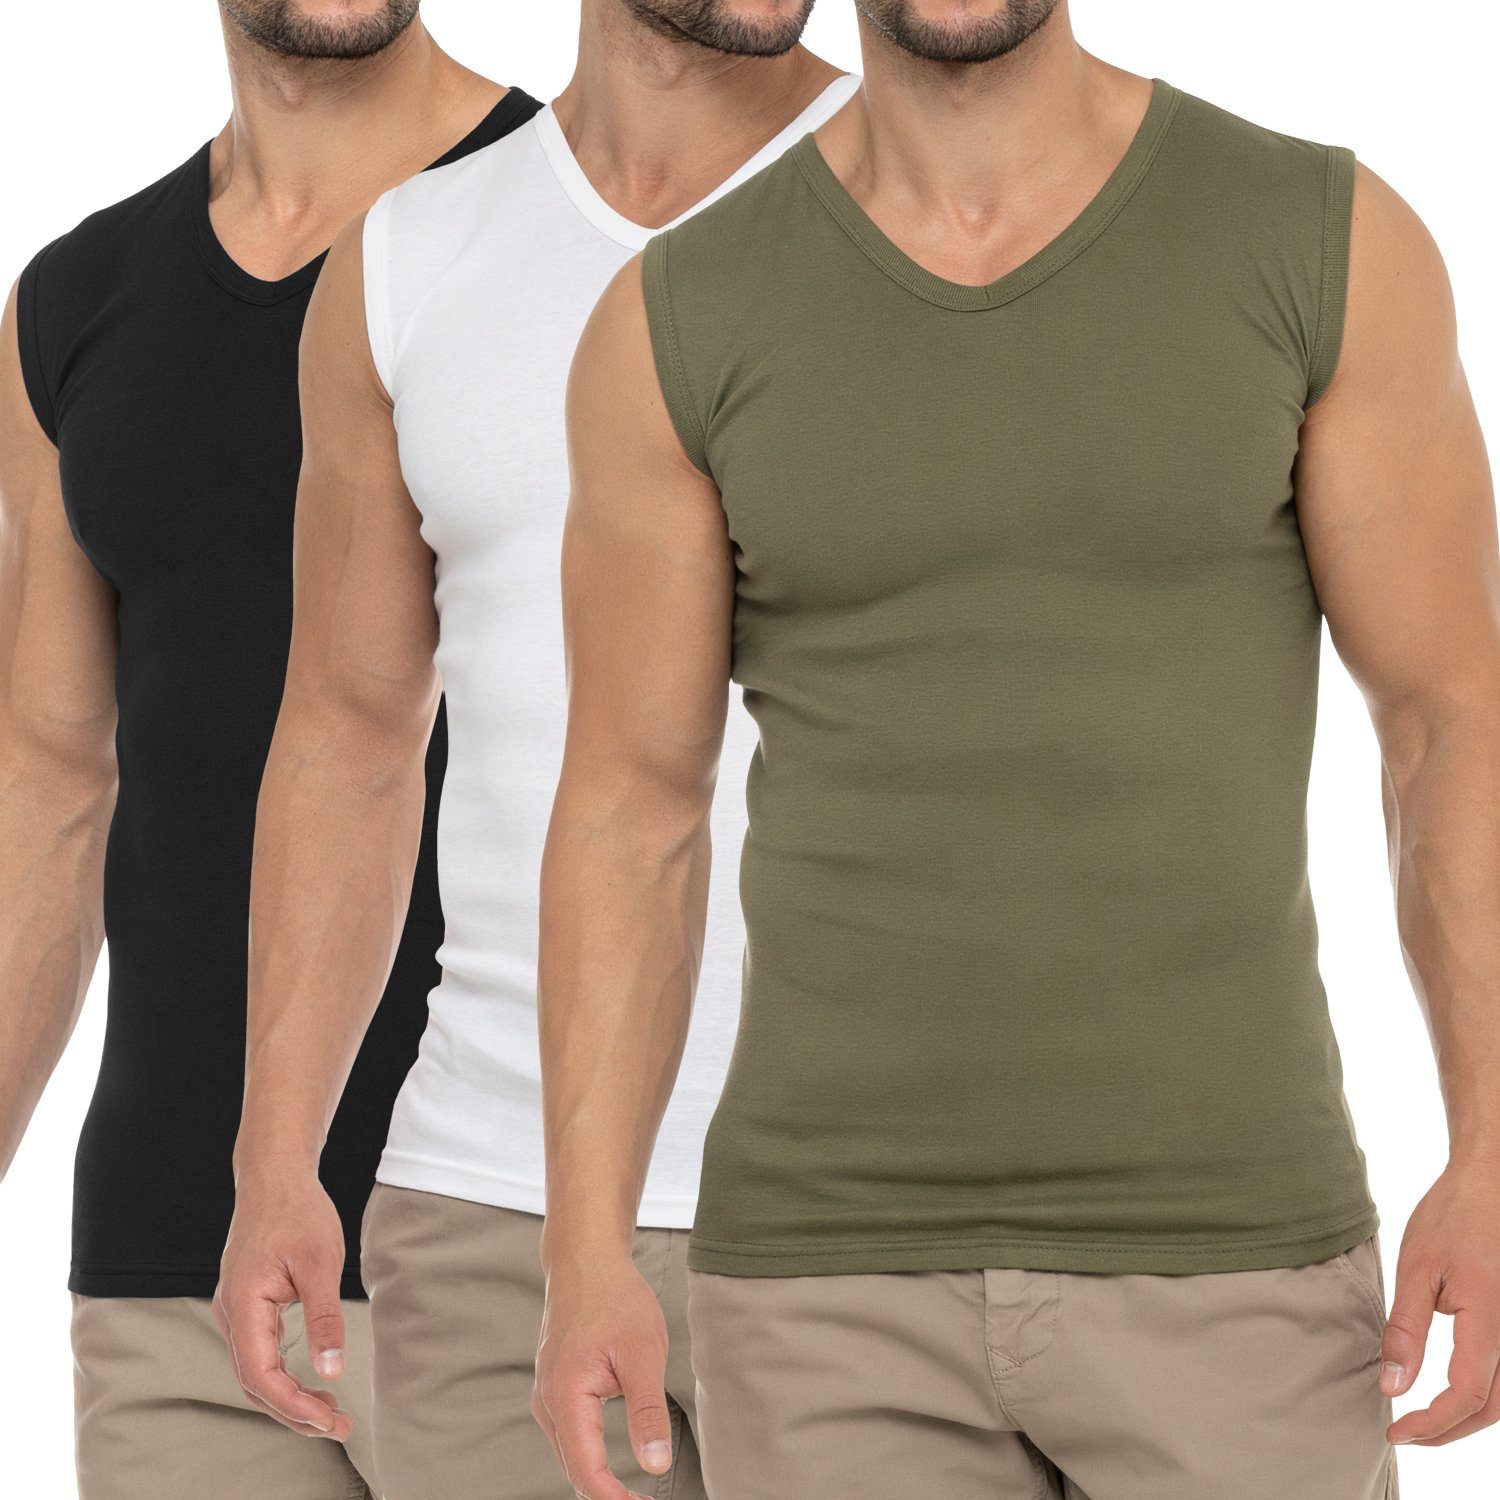 celodoro Unterhemd Herren Business Muskelshirt V-Neck (3er Pack) Muscle Shirt Olive / Weiss / Schwarz